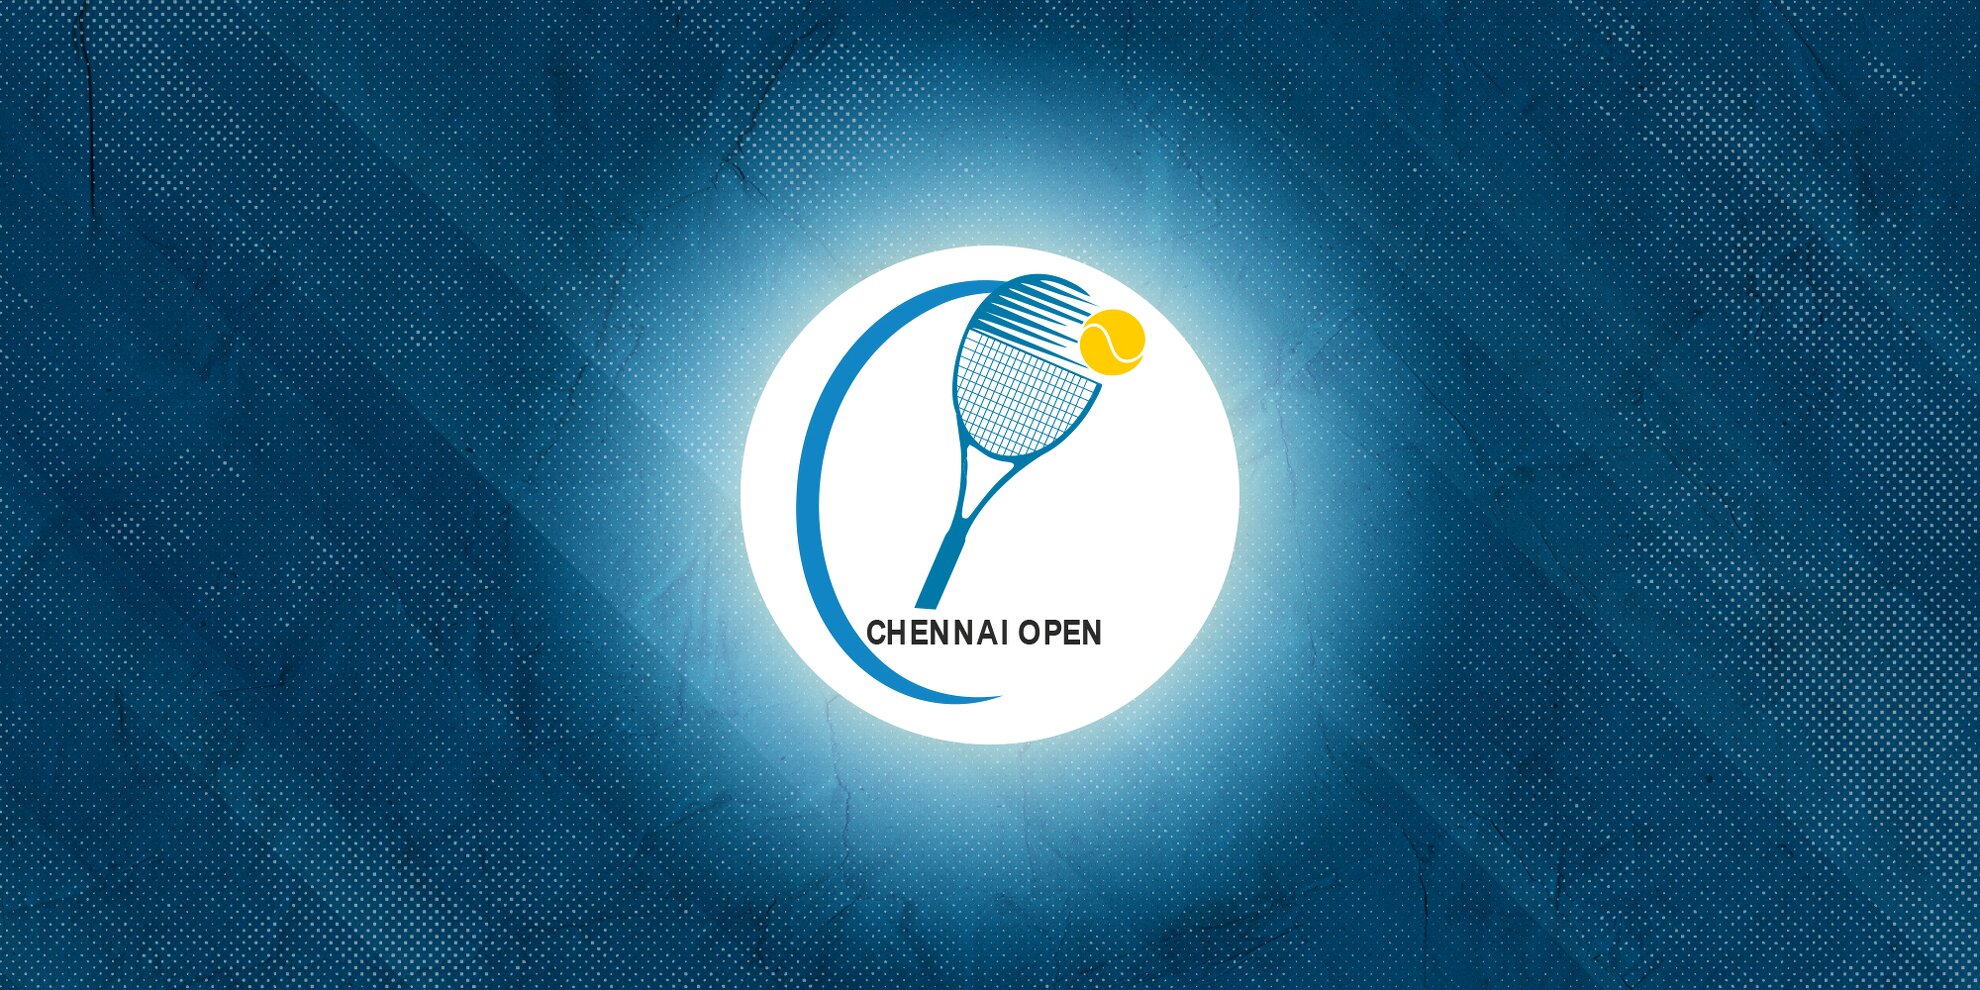 Chennai Open